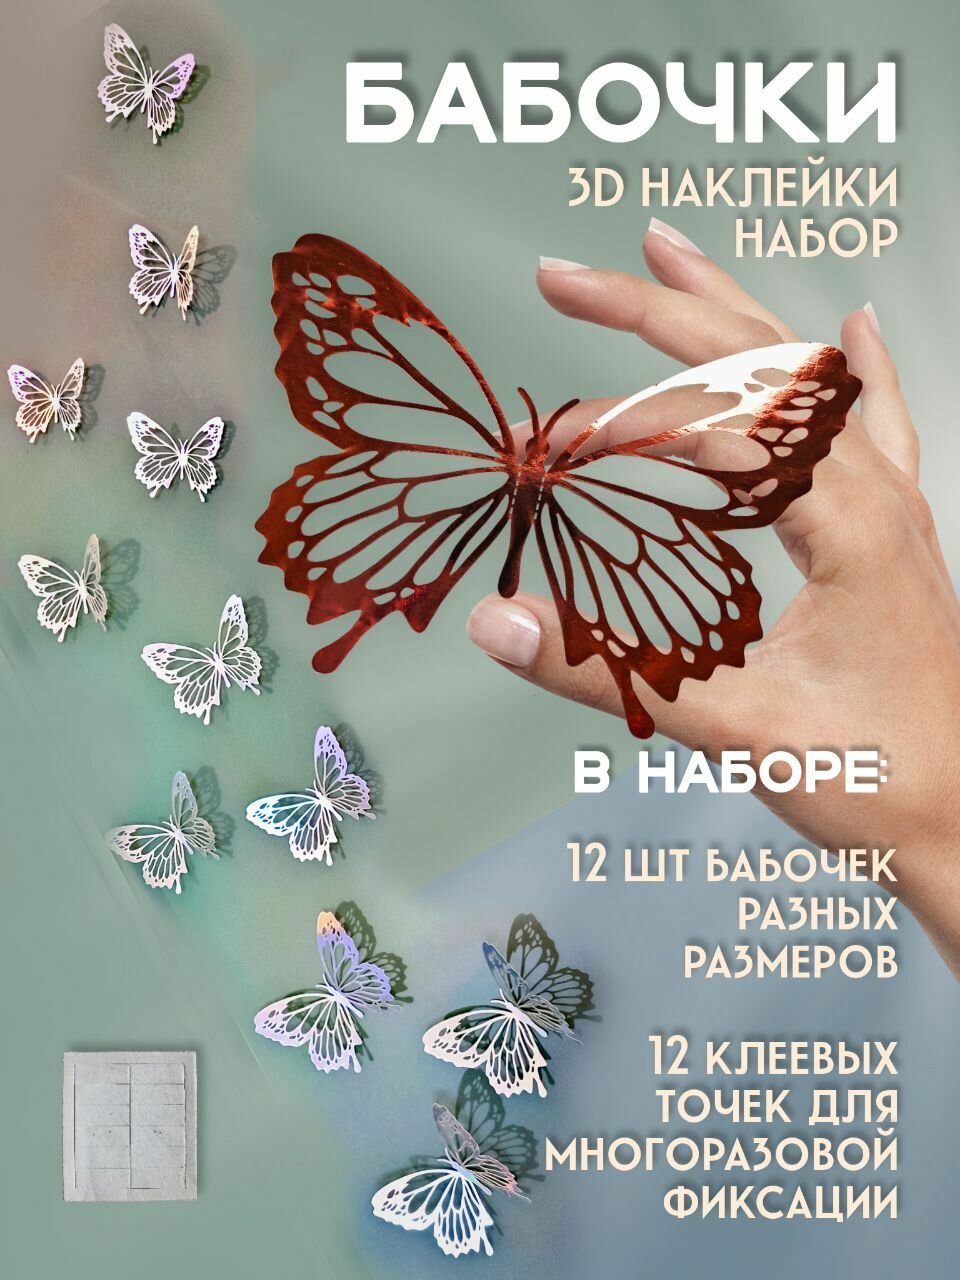 Декоративные интерьерные наклейки 3d Бабочки на стену декор для дома интерьера бабочки 3Д